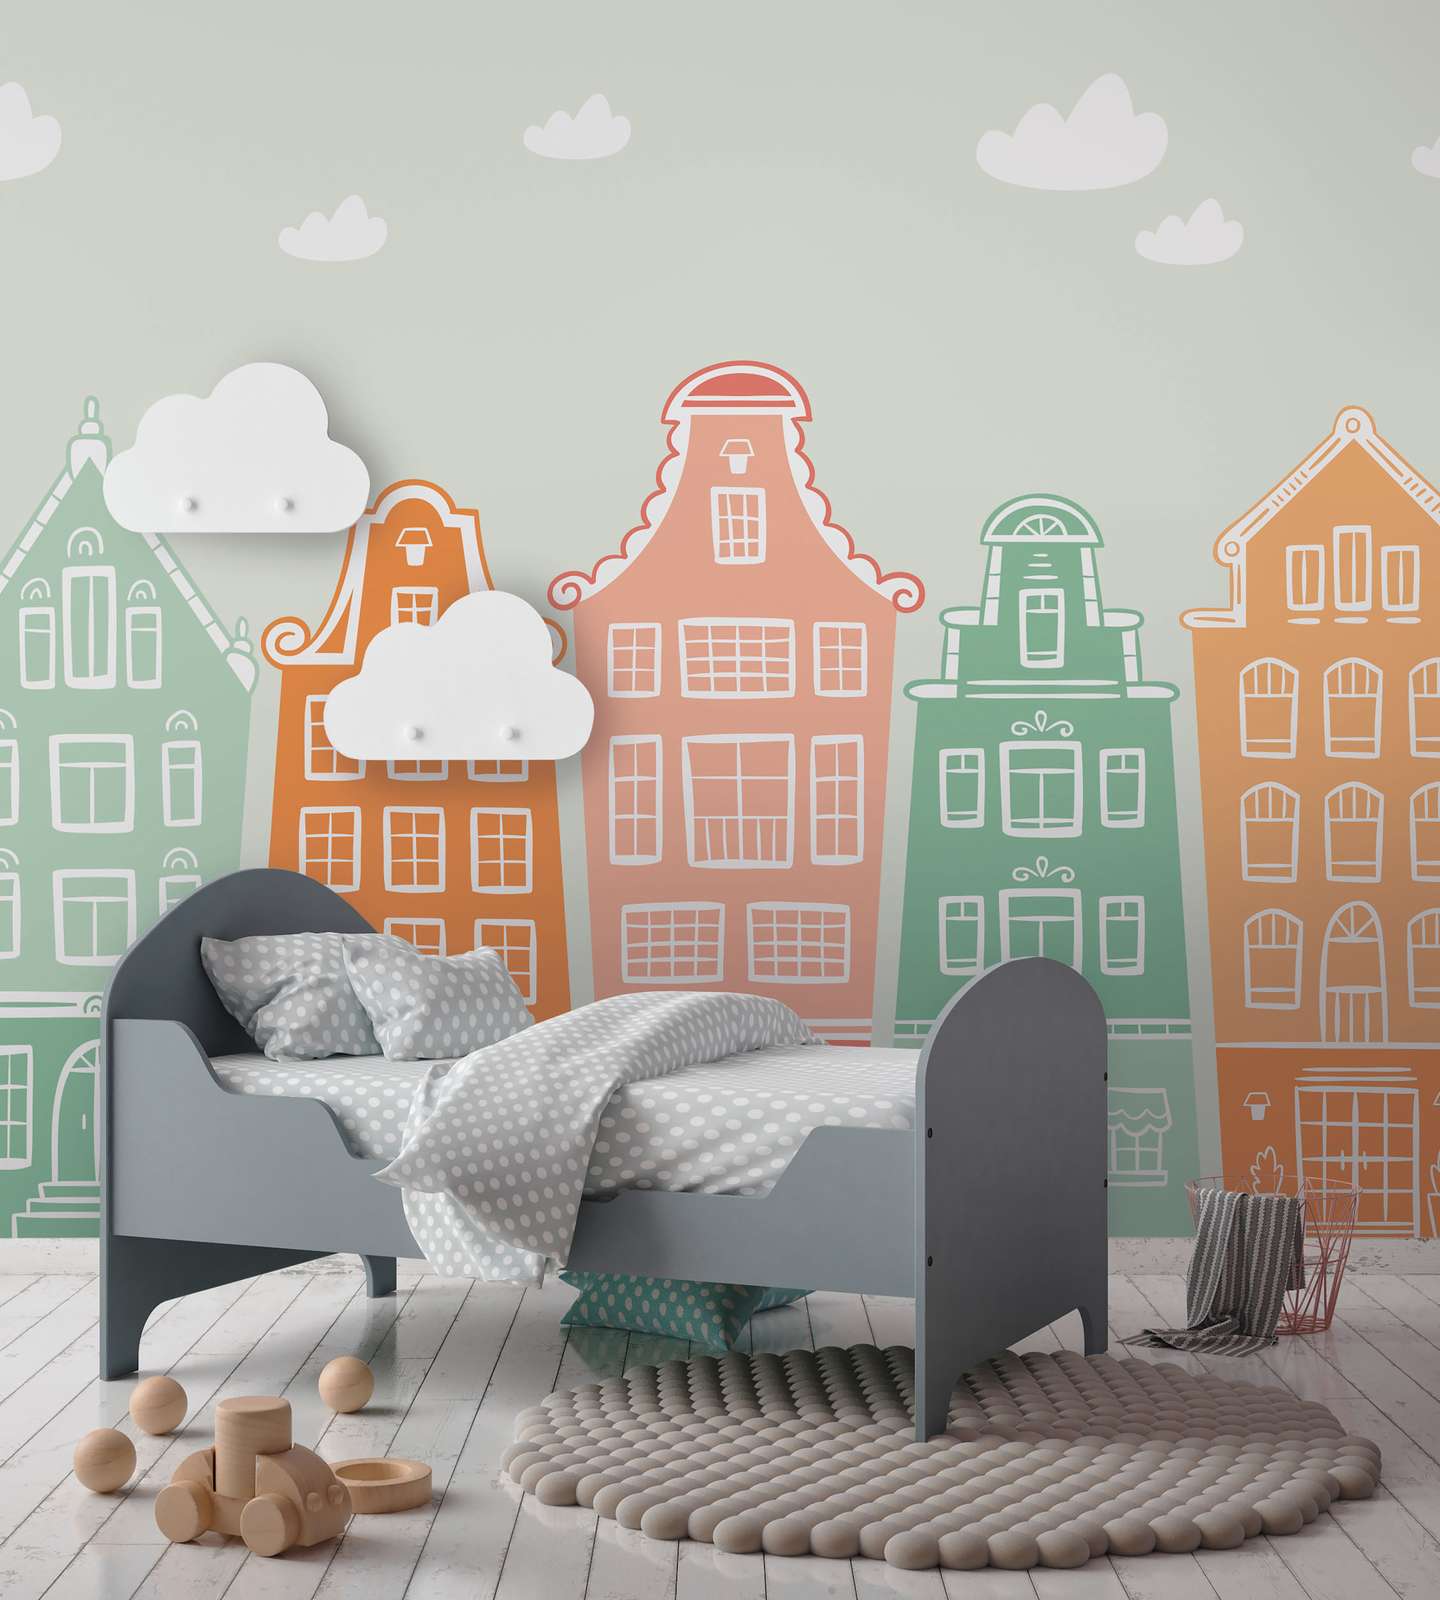             Kinderkamer Kleine Stad met Huizen Onderlaag behang - Pastel, Bont
        